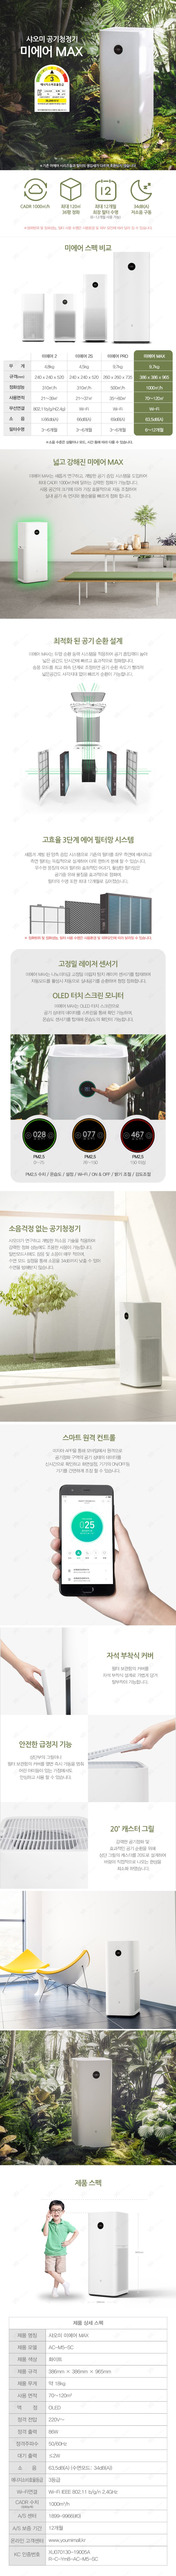 [샤오미] 미에어 MAX (샤오미 공기청정기) 한국 공식수입 정품, 국내 공식수입 정품